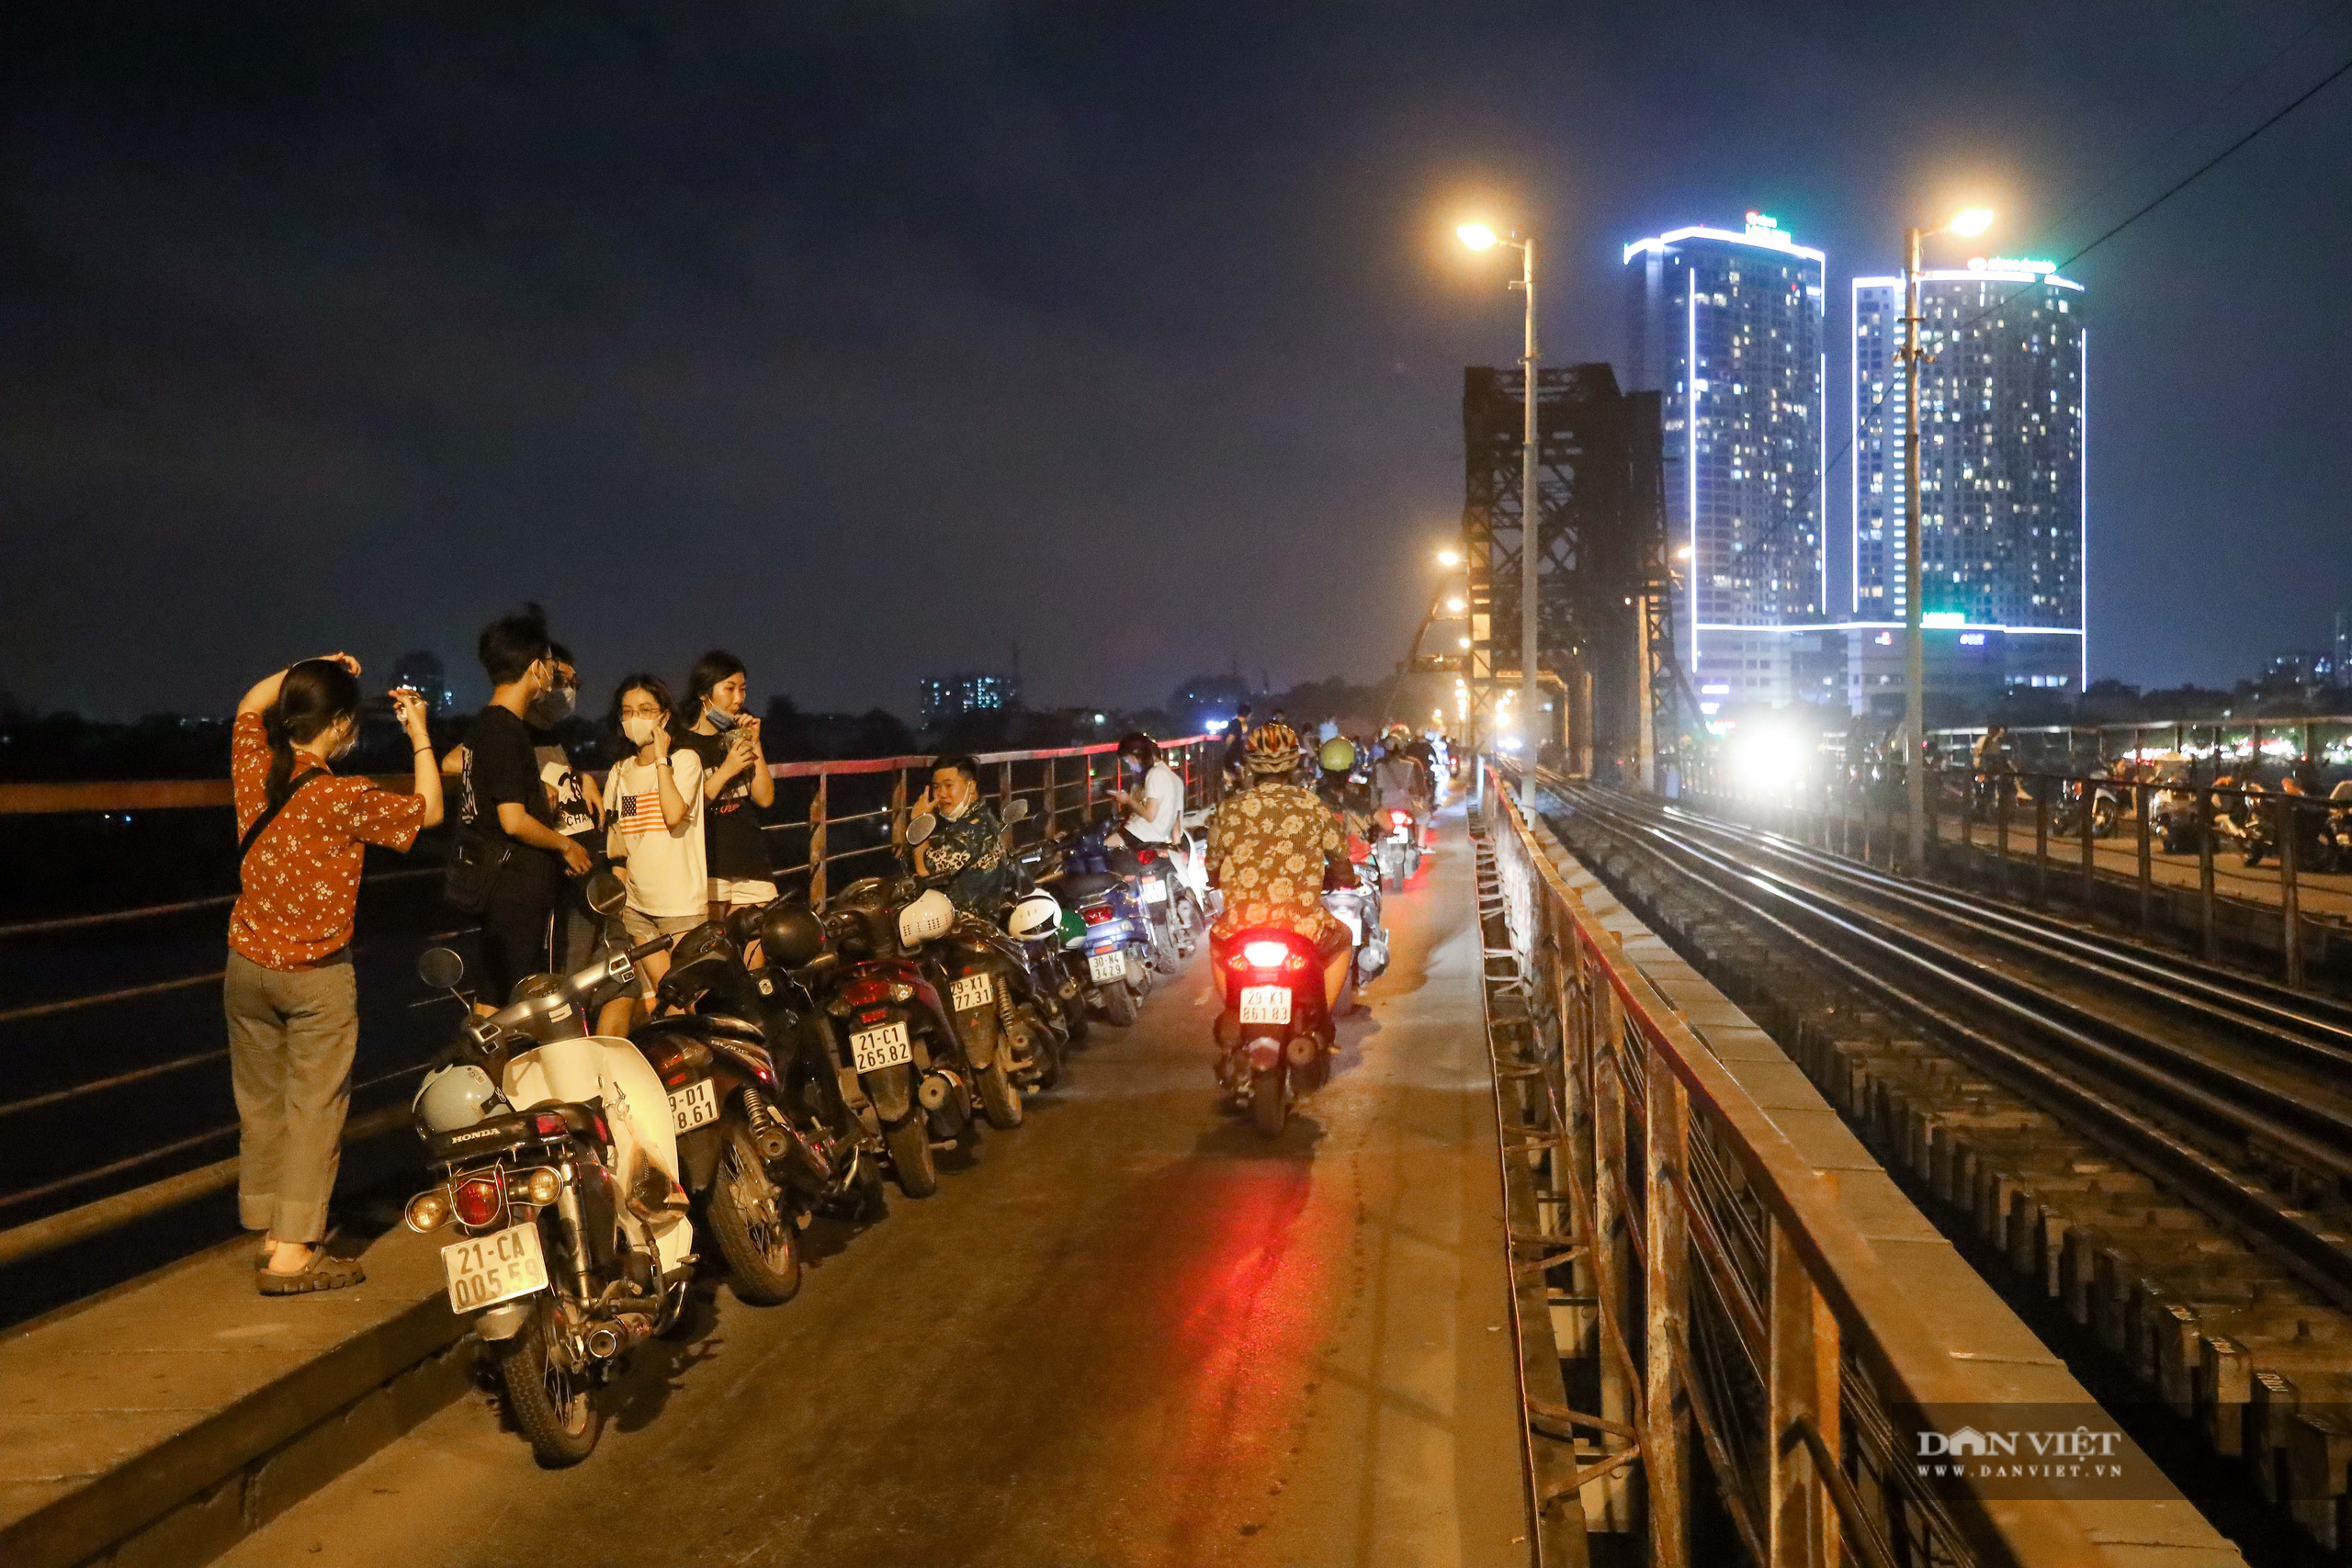 Hà Nội: Hàng trăm người lên cầu Long Biên tụ tập trong đêm bất chấp dịch Covid-19 - Ảnh 1.